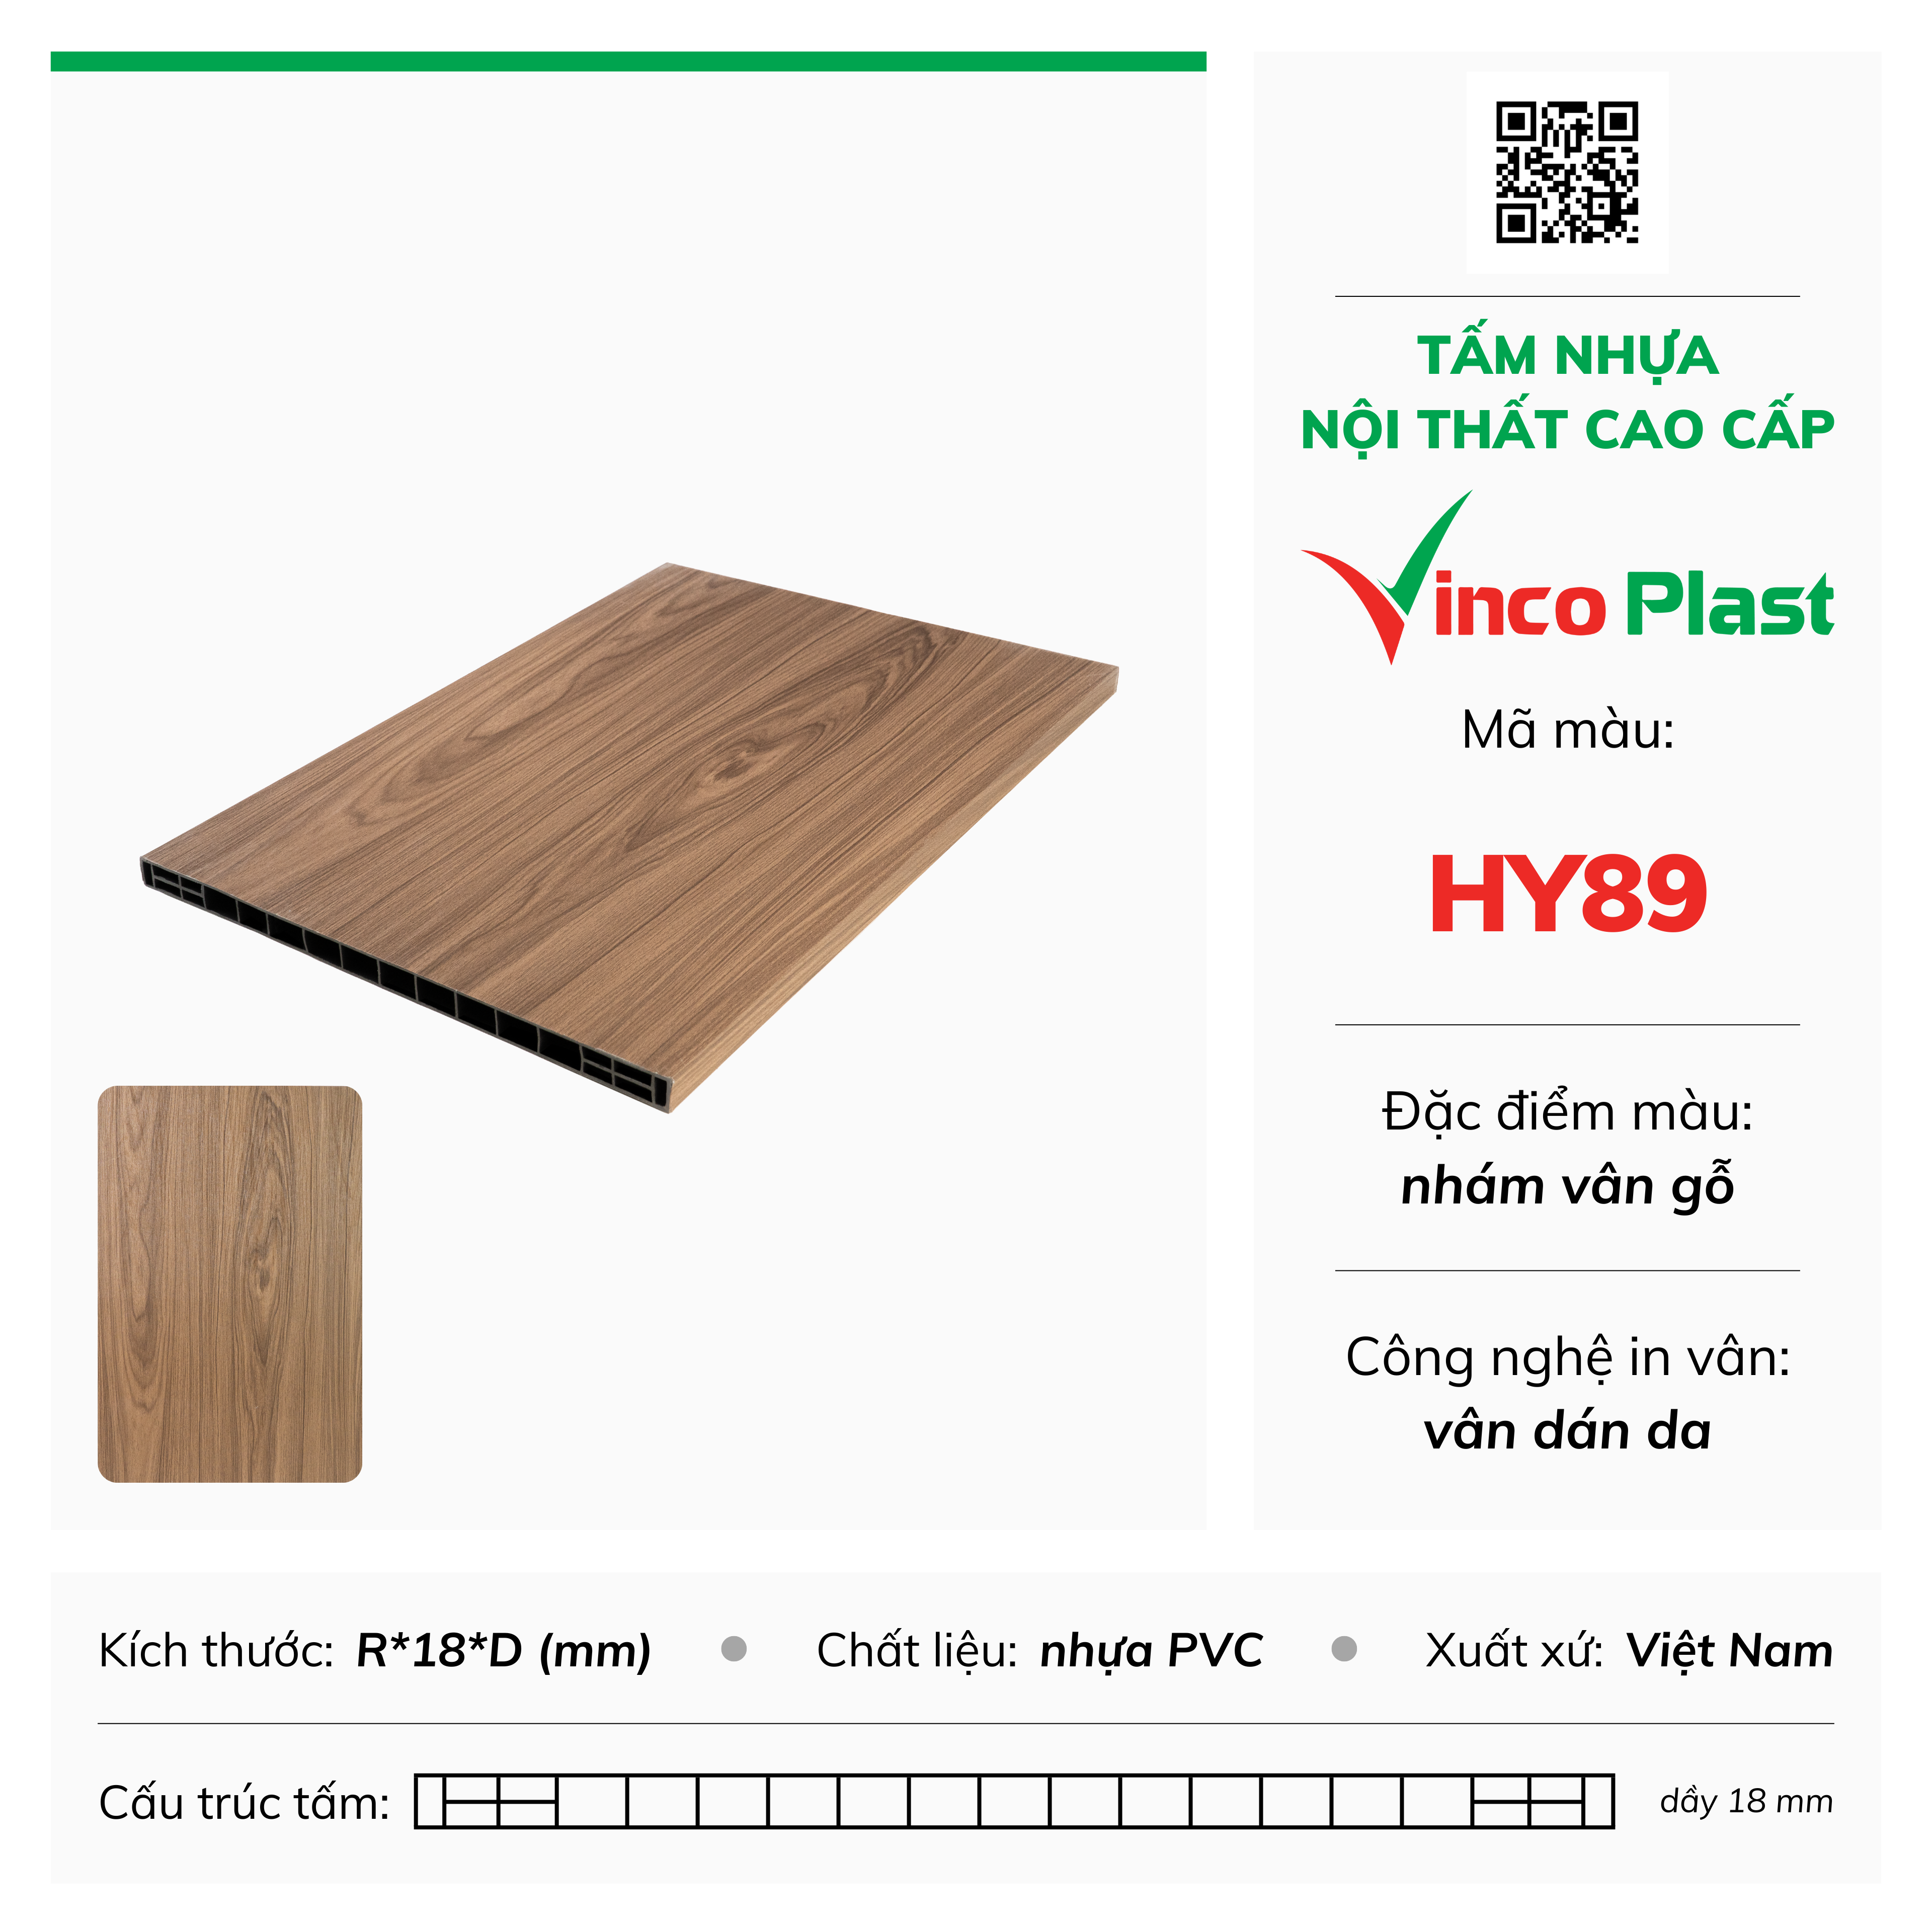 Tấm nhựa nội thất cao cấp Vincoplast màu hy89